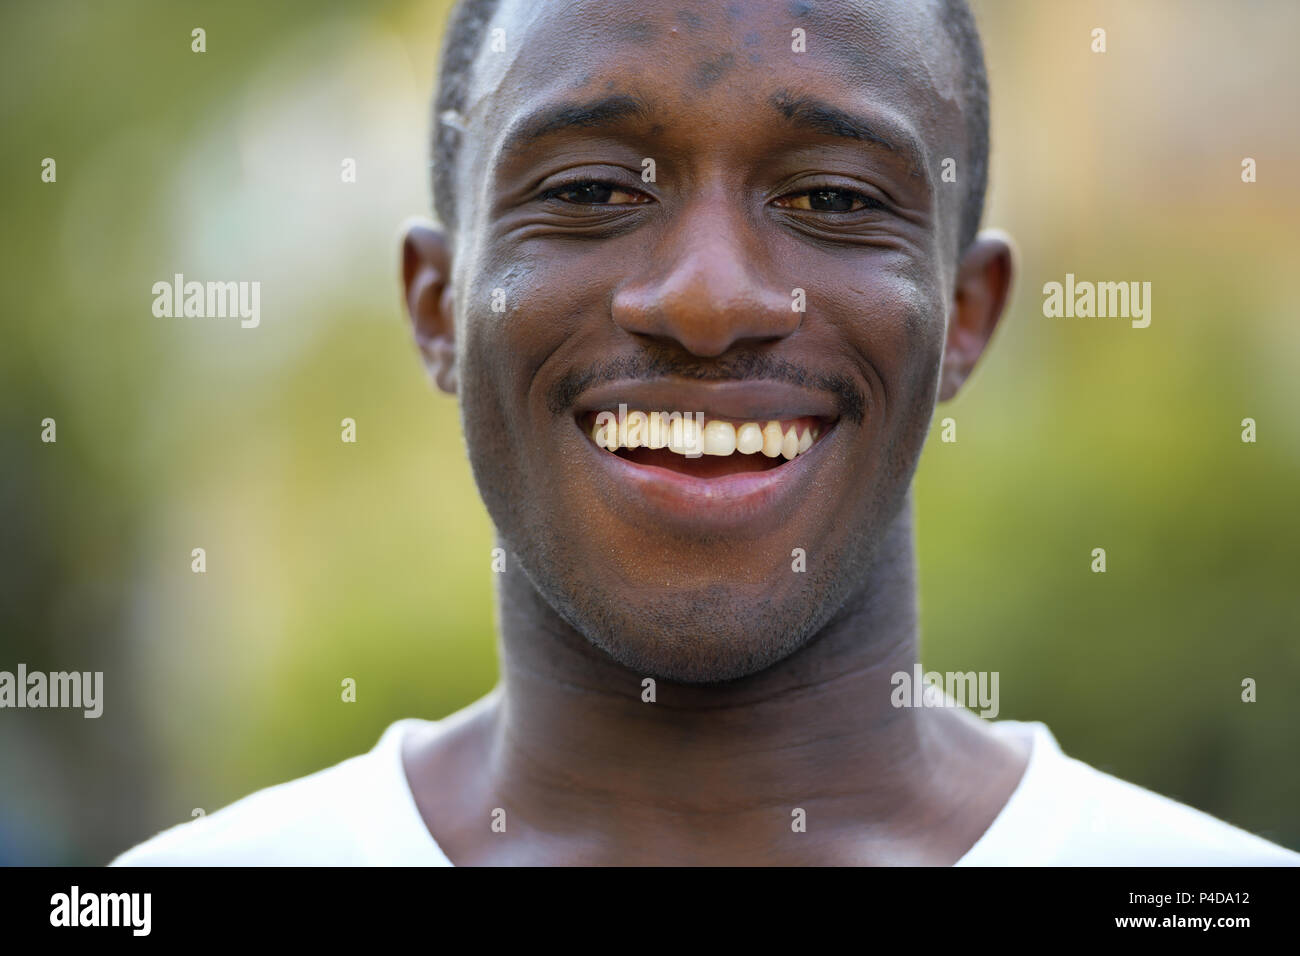 Junge glücklich afrikanischer Mann in den Straßen lächelnd im Freien Stockfoto